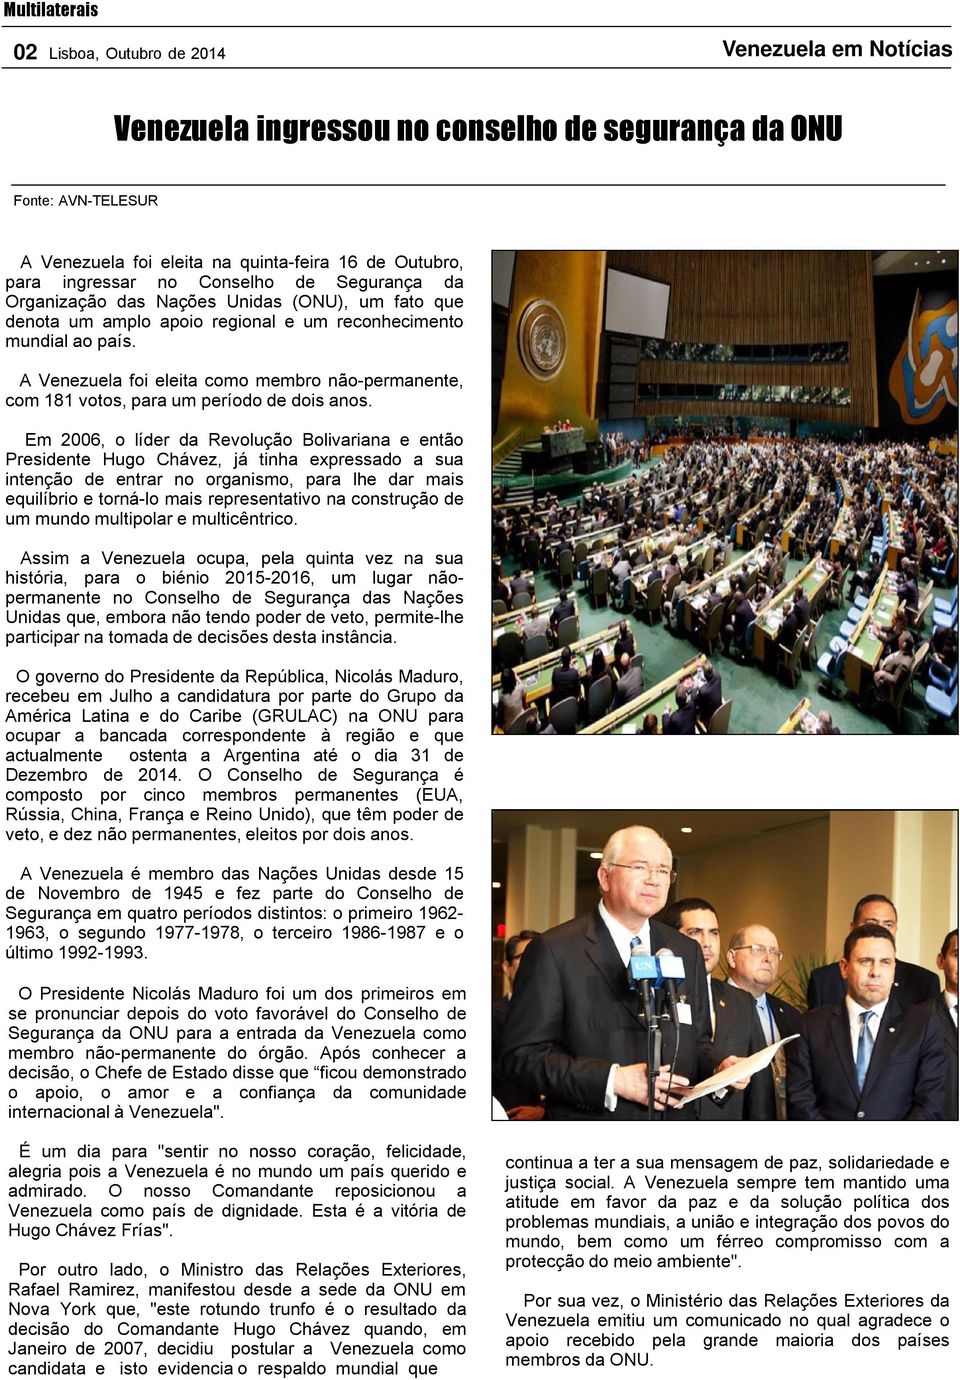 A Venezuela foi eleita como membro não-permanente, com 181 votos, para um período de dois anos.